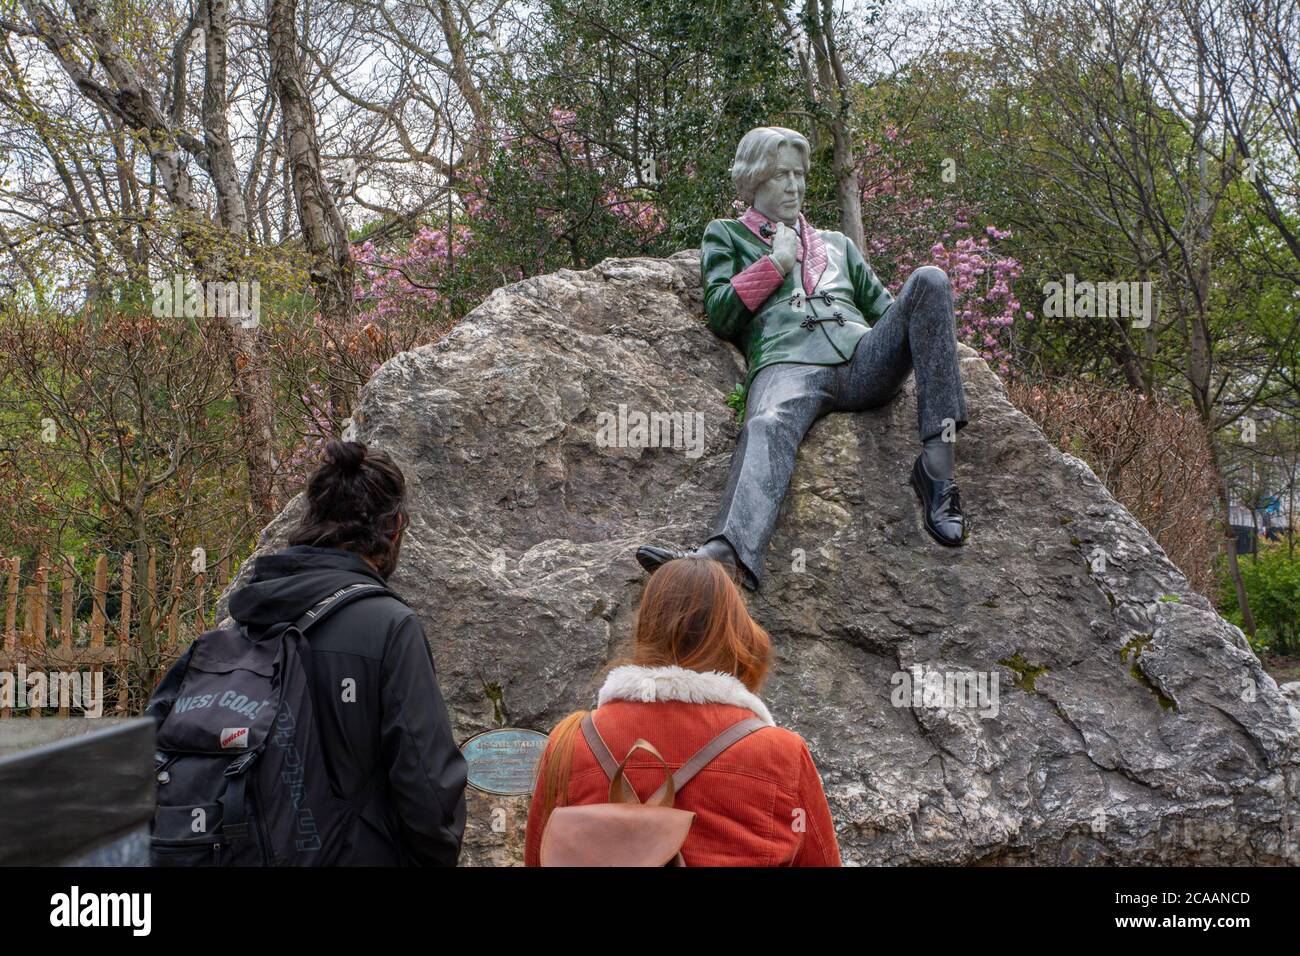 Touristes regardant la statue d'Oscar Wilde à Merrion Square à Dublin Irlande Banque D'Images